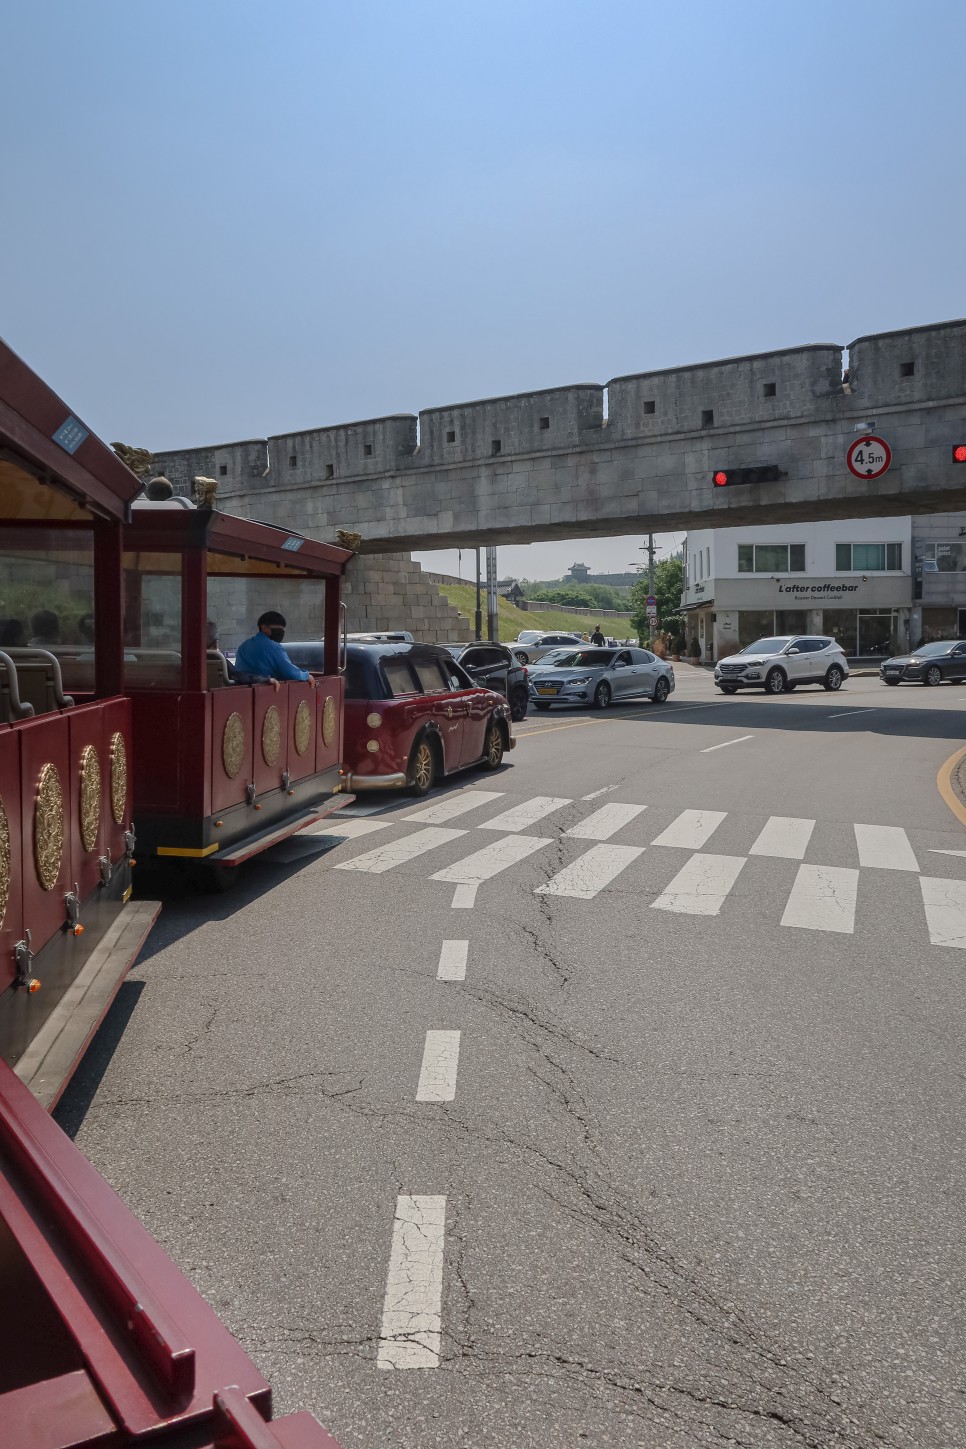 서울 근교 봄나들이, 수원화성 이용 꿀팁(방화수류정 피크닉, 화성어차)